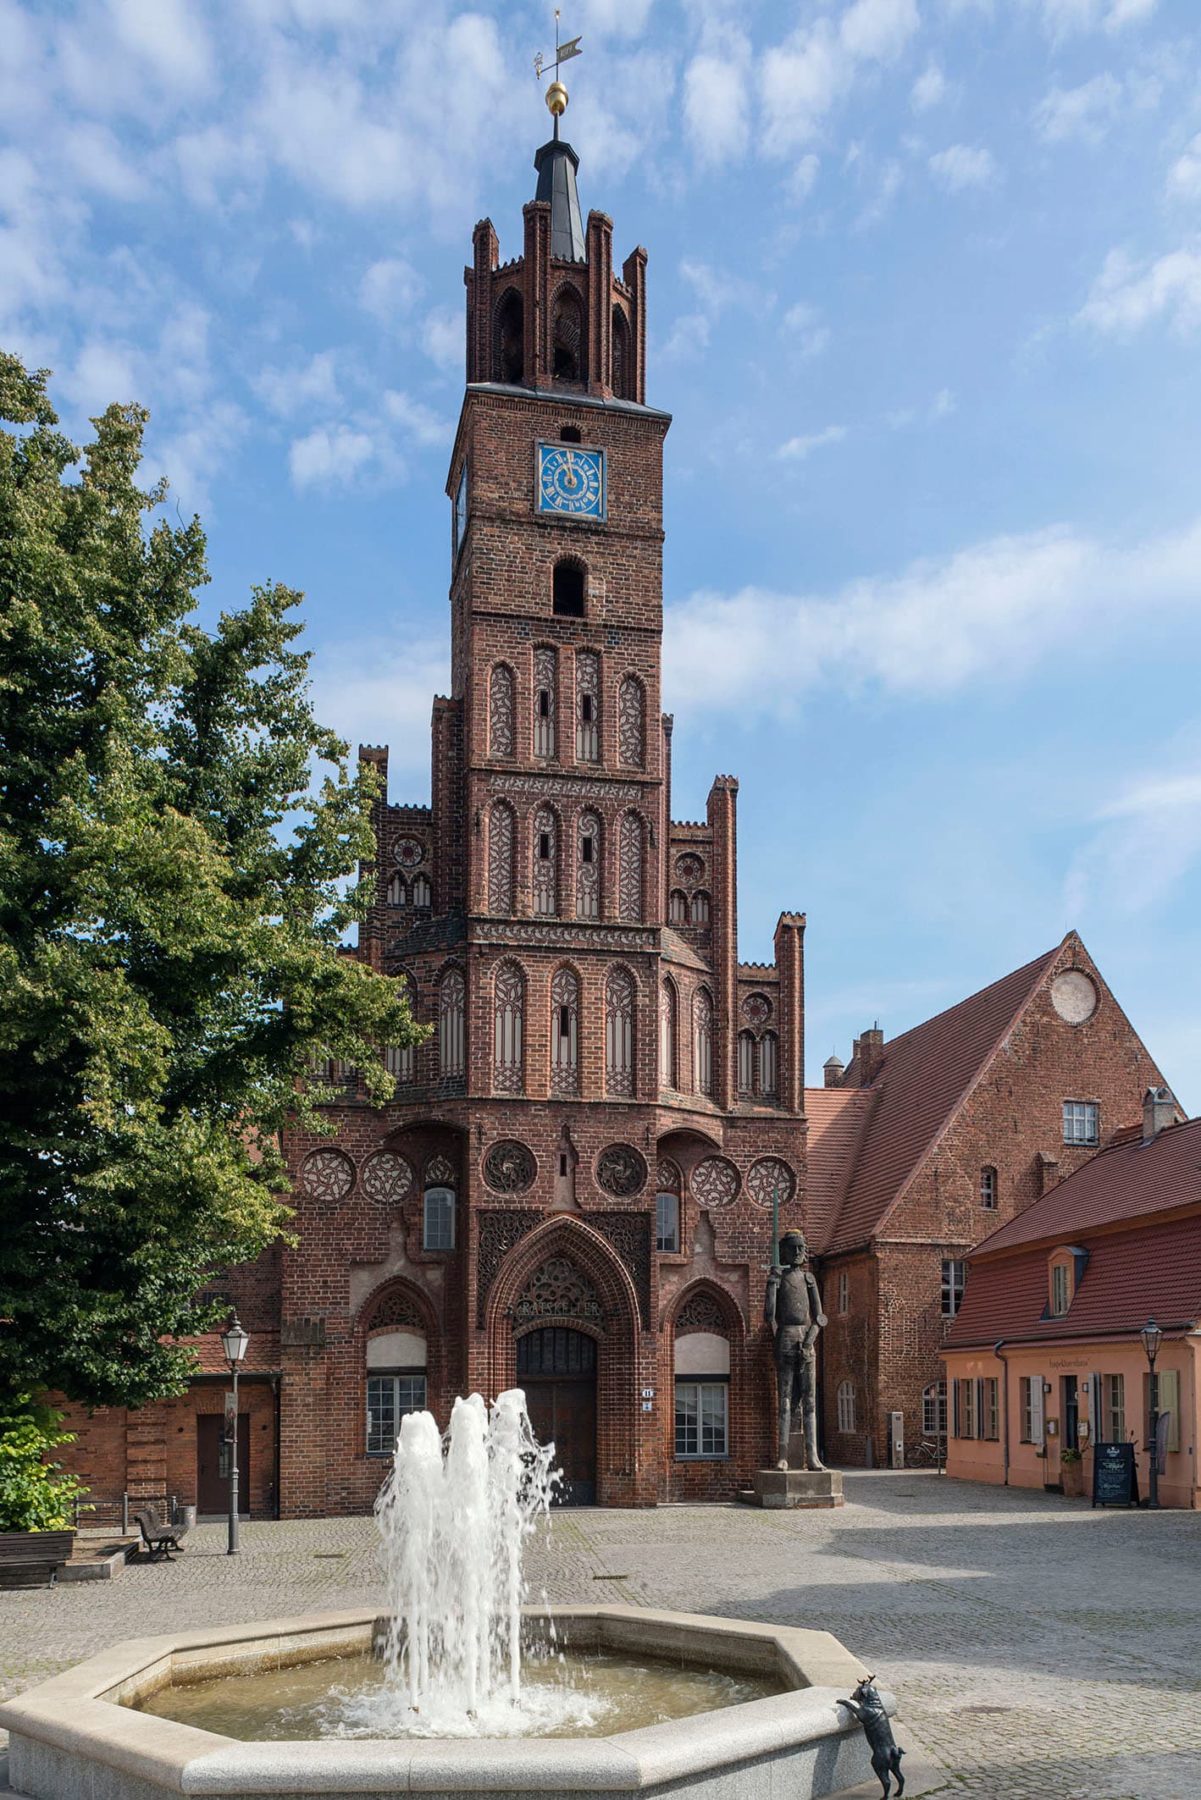 Ein großer Turm aus Backstein, davor steht eine steinerne Figur, ein Springbrunnen steht auf dem Platz vor dem Turm